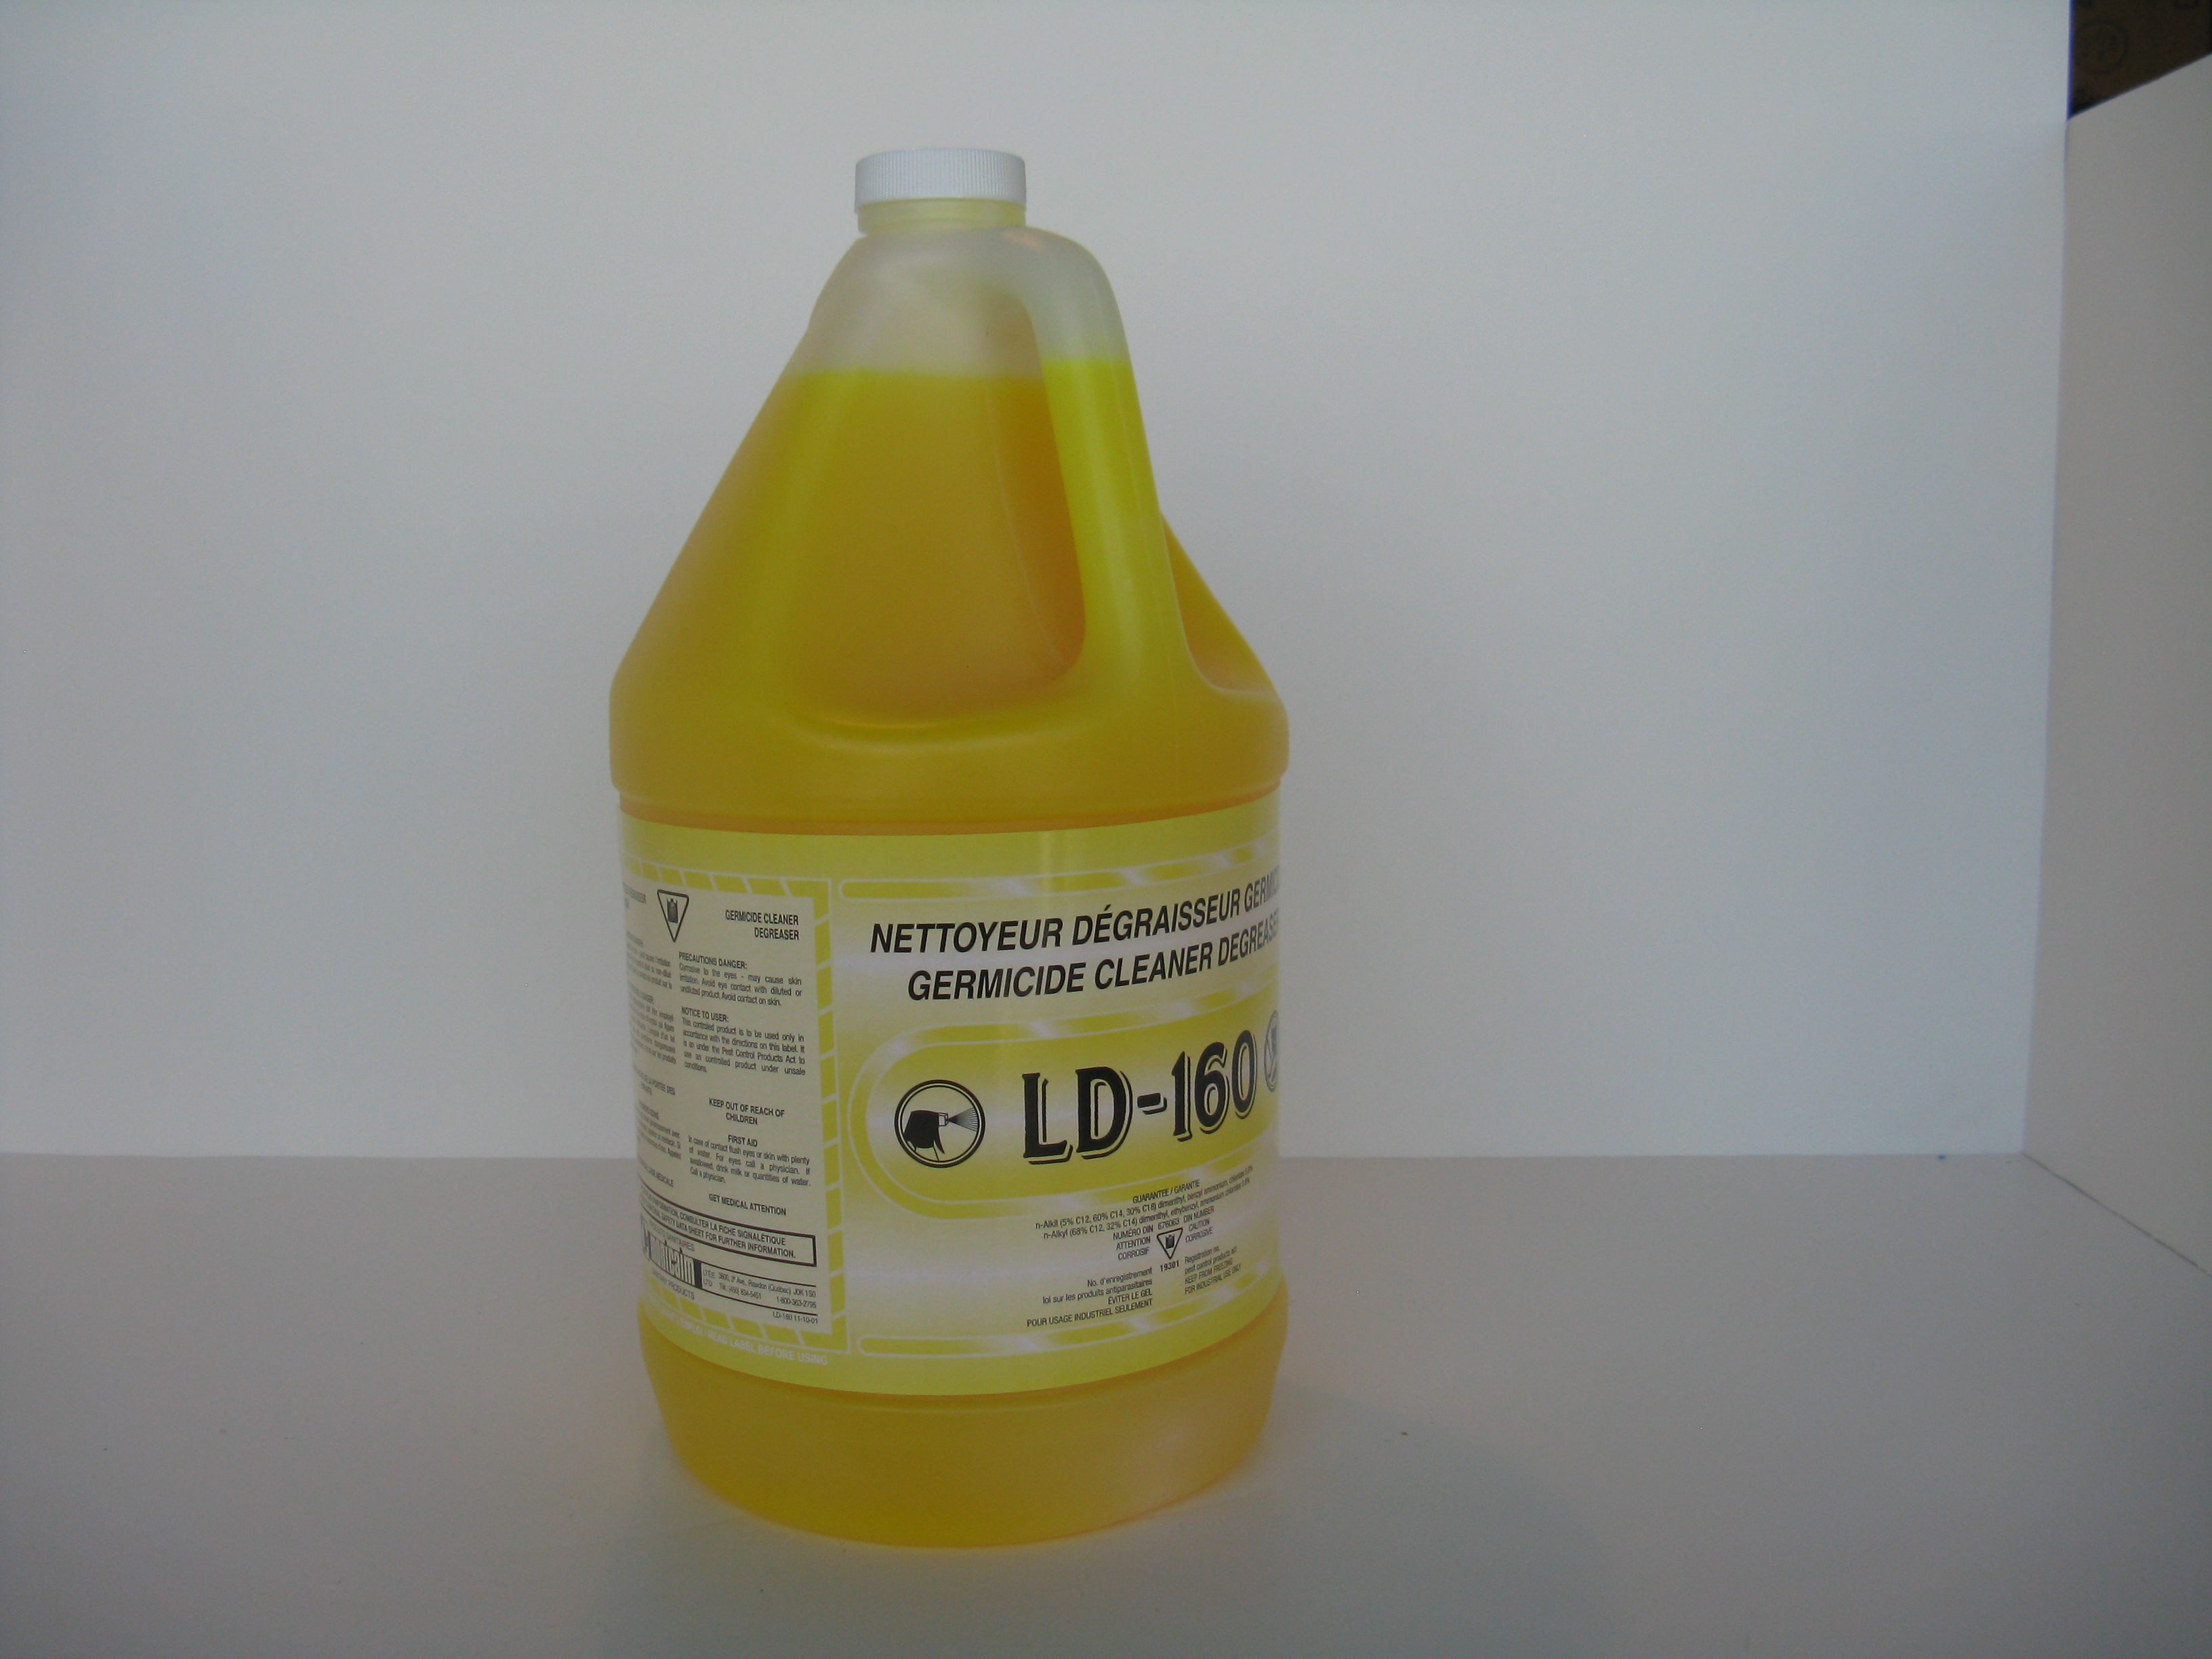 Nettoyeur assainisseur LD-160